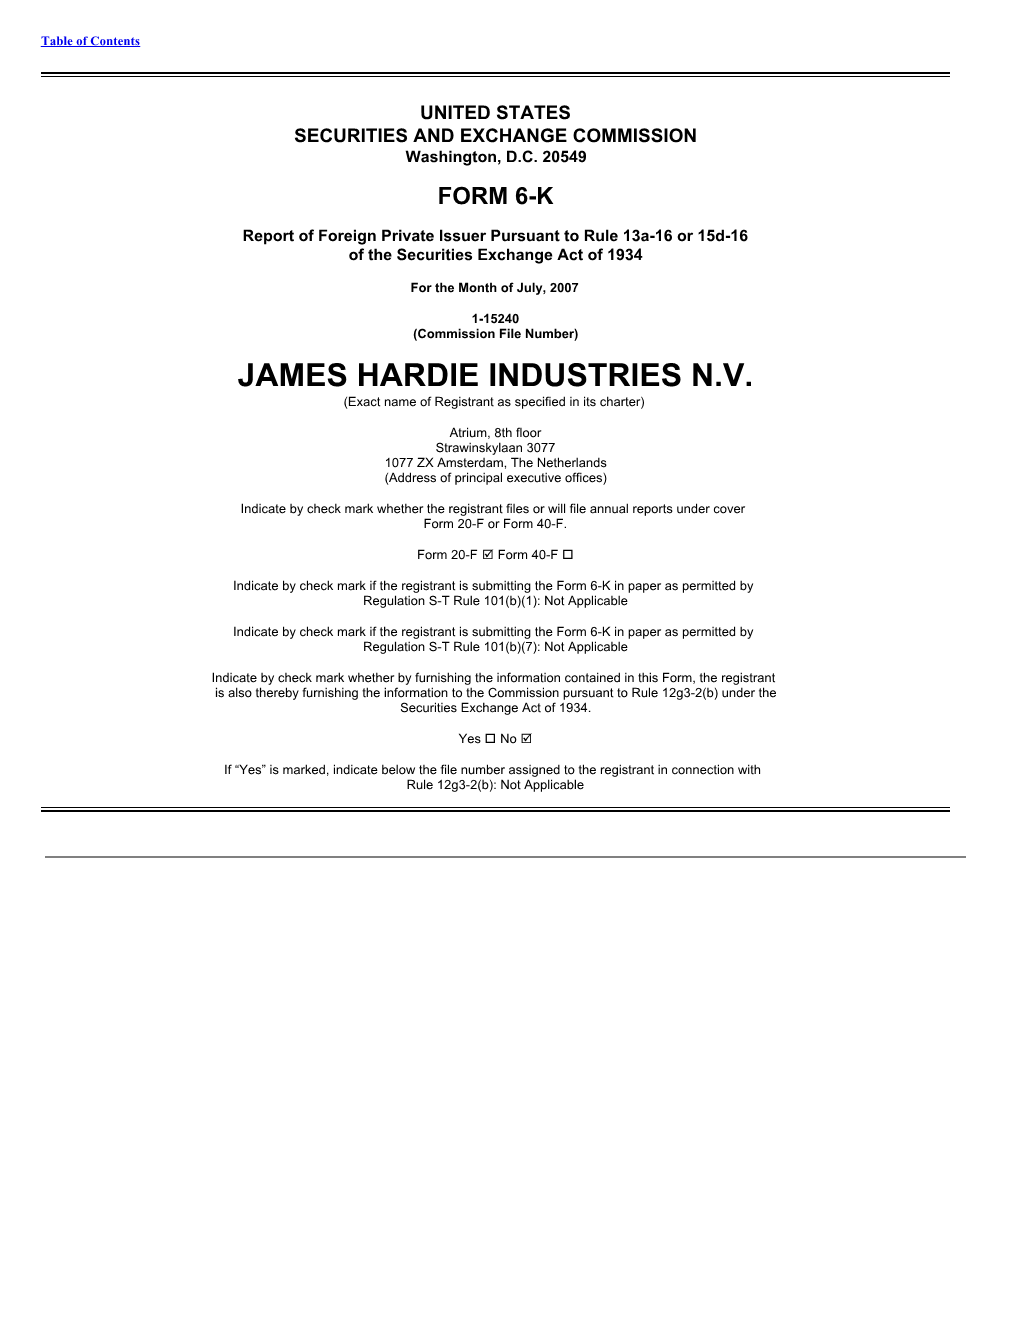 James Hardie Industries NV